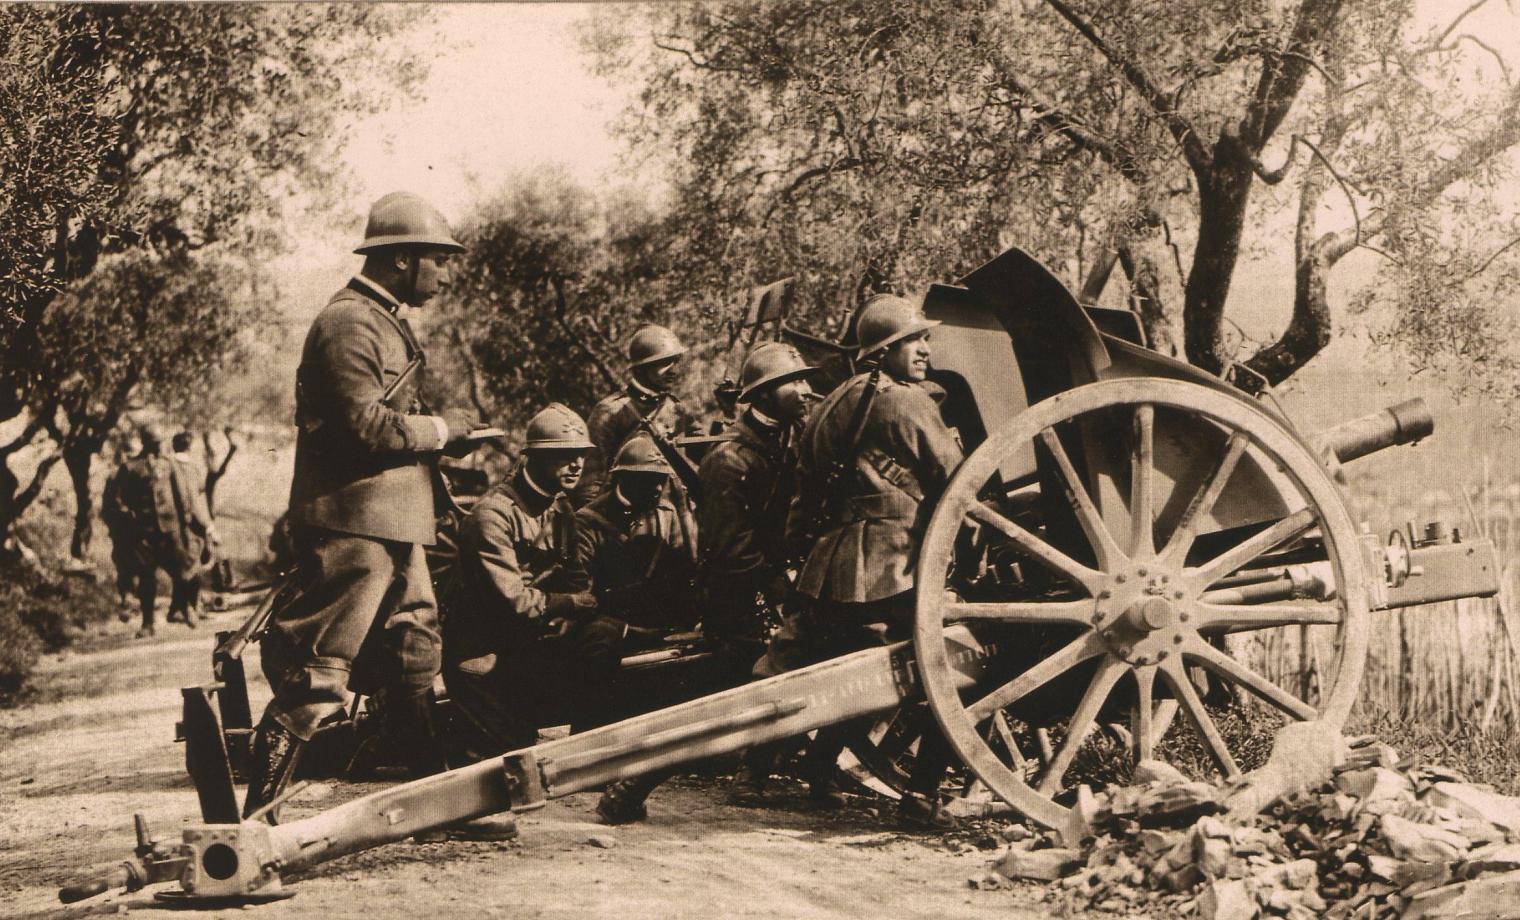 Итальянская легкая 75-мм пушка образца 1911 года на позиции. Фотография 1917 или 1918 года